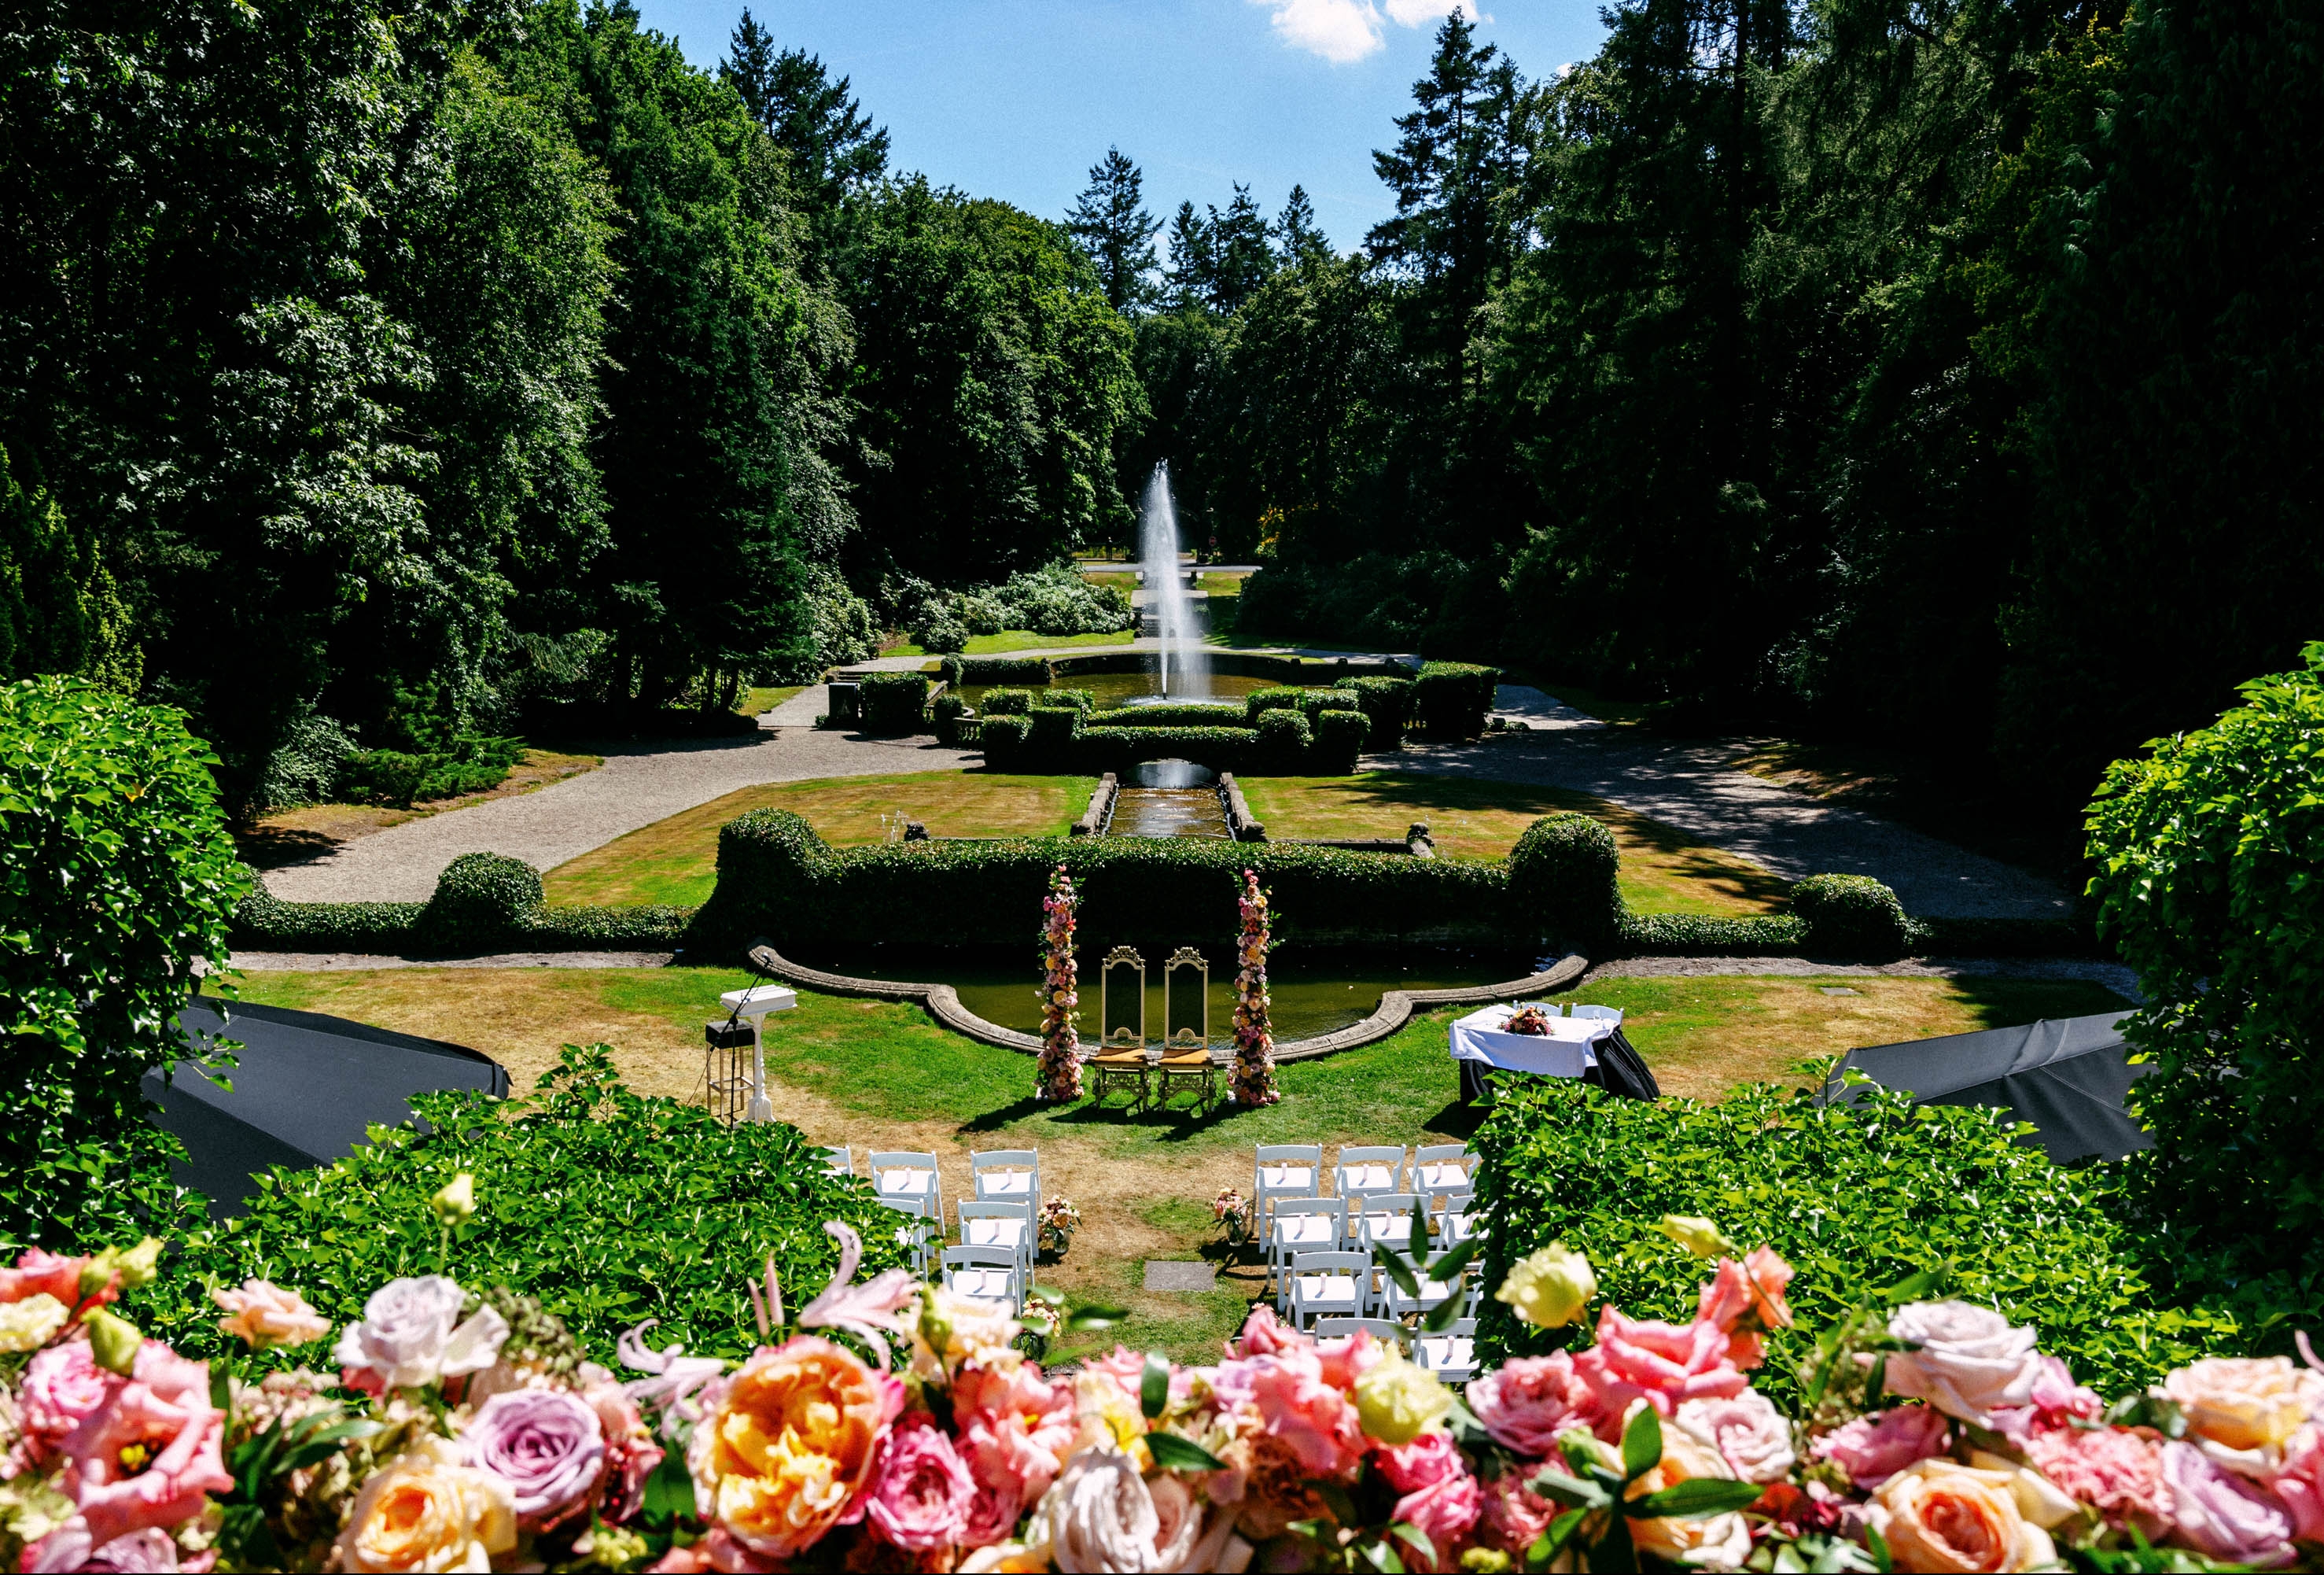 A Wedding Bouquet fountain in a garden.